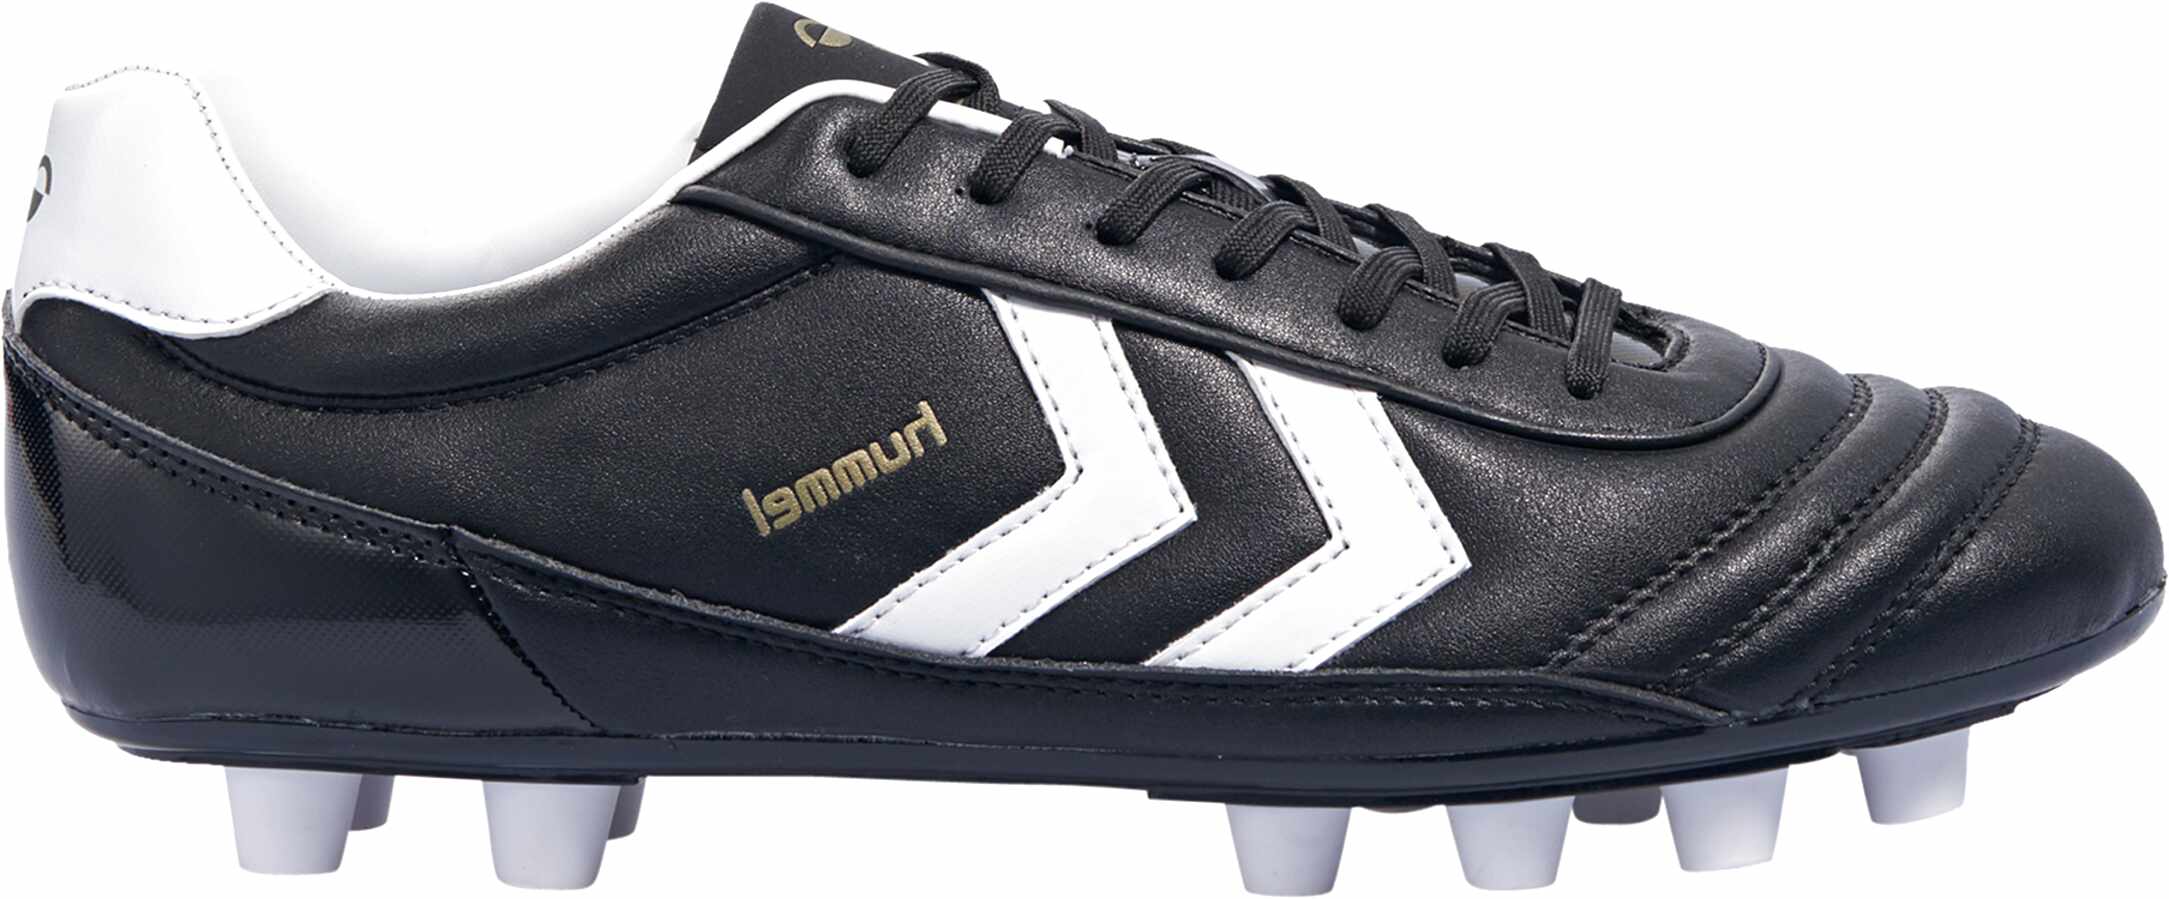 fly mærkelig strand Hummel Football Boots for sale in UK | View 60 bargains